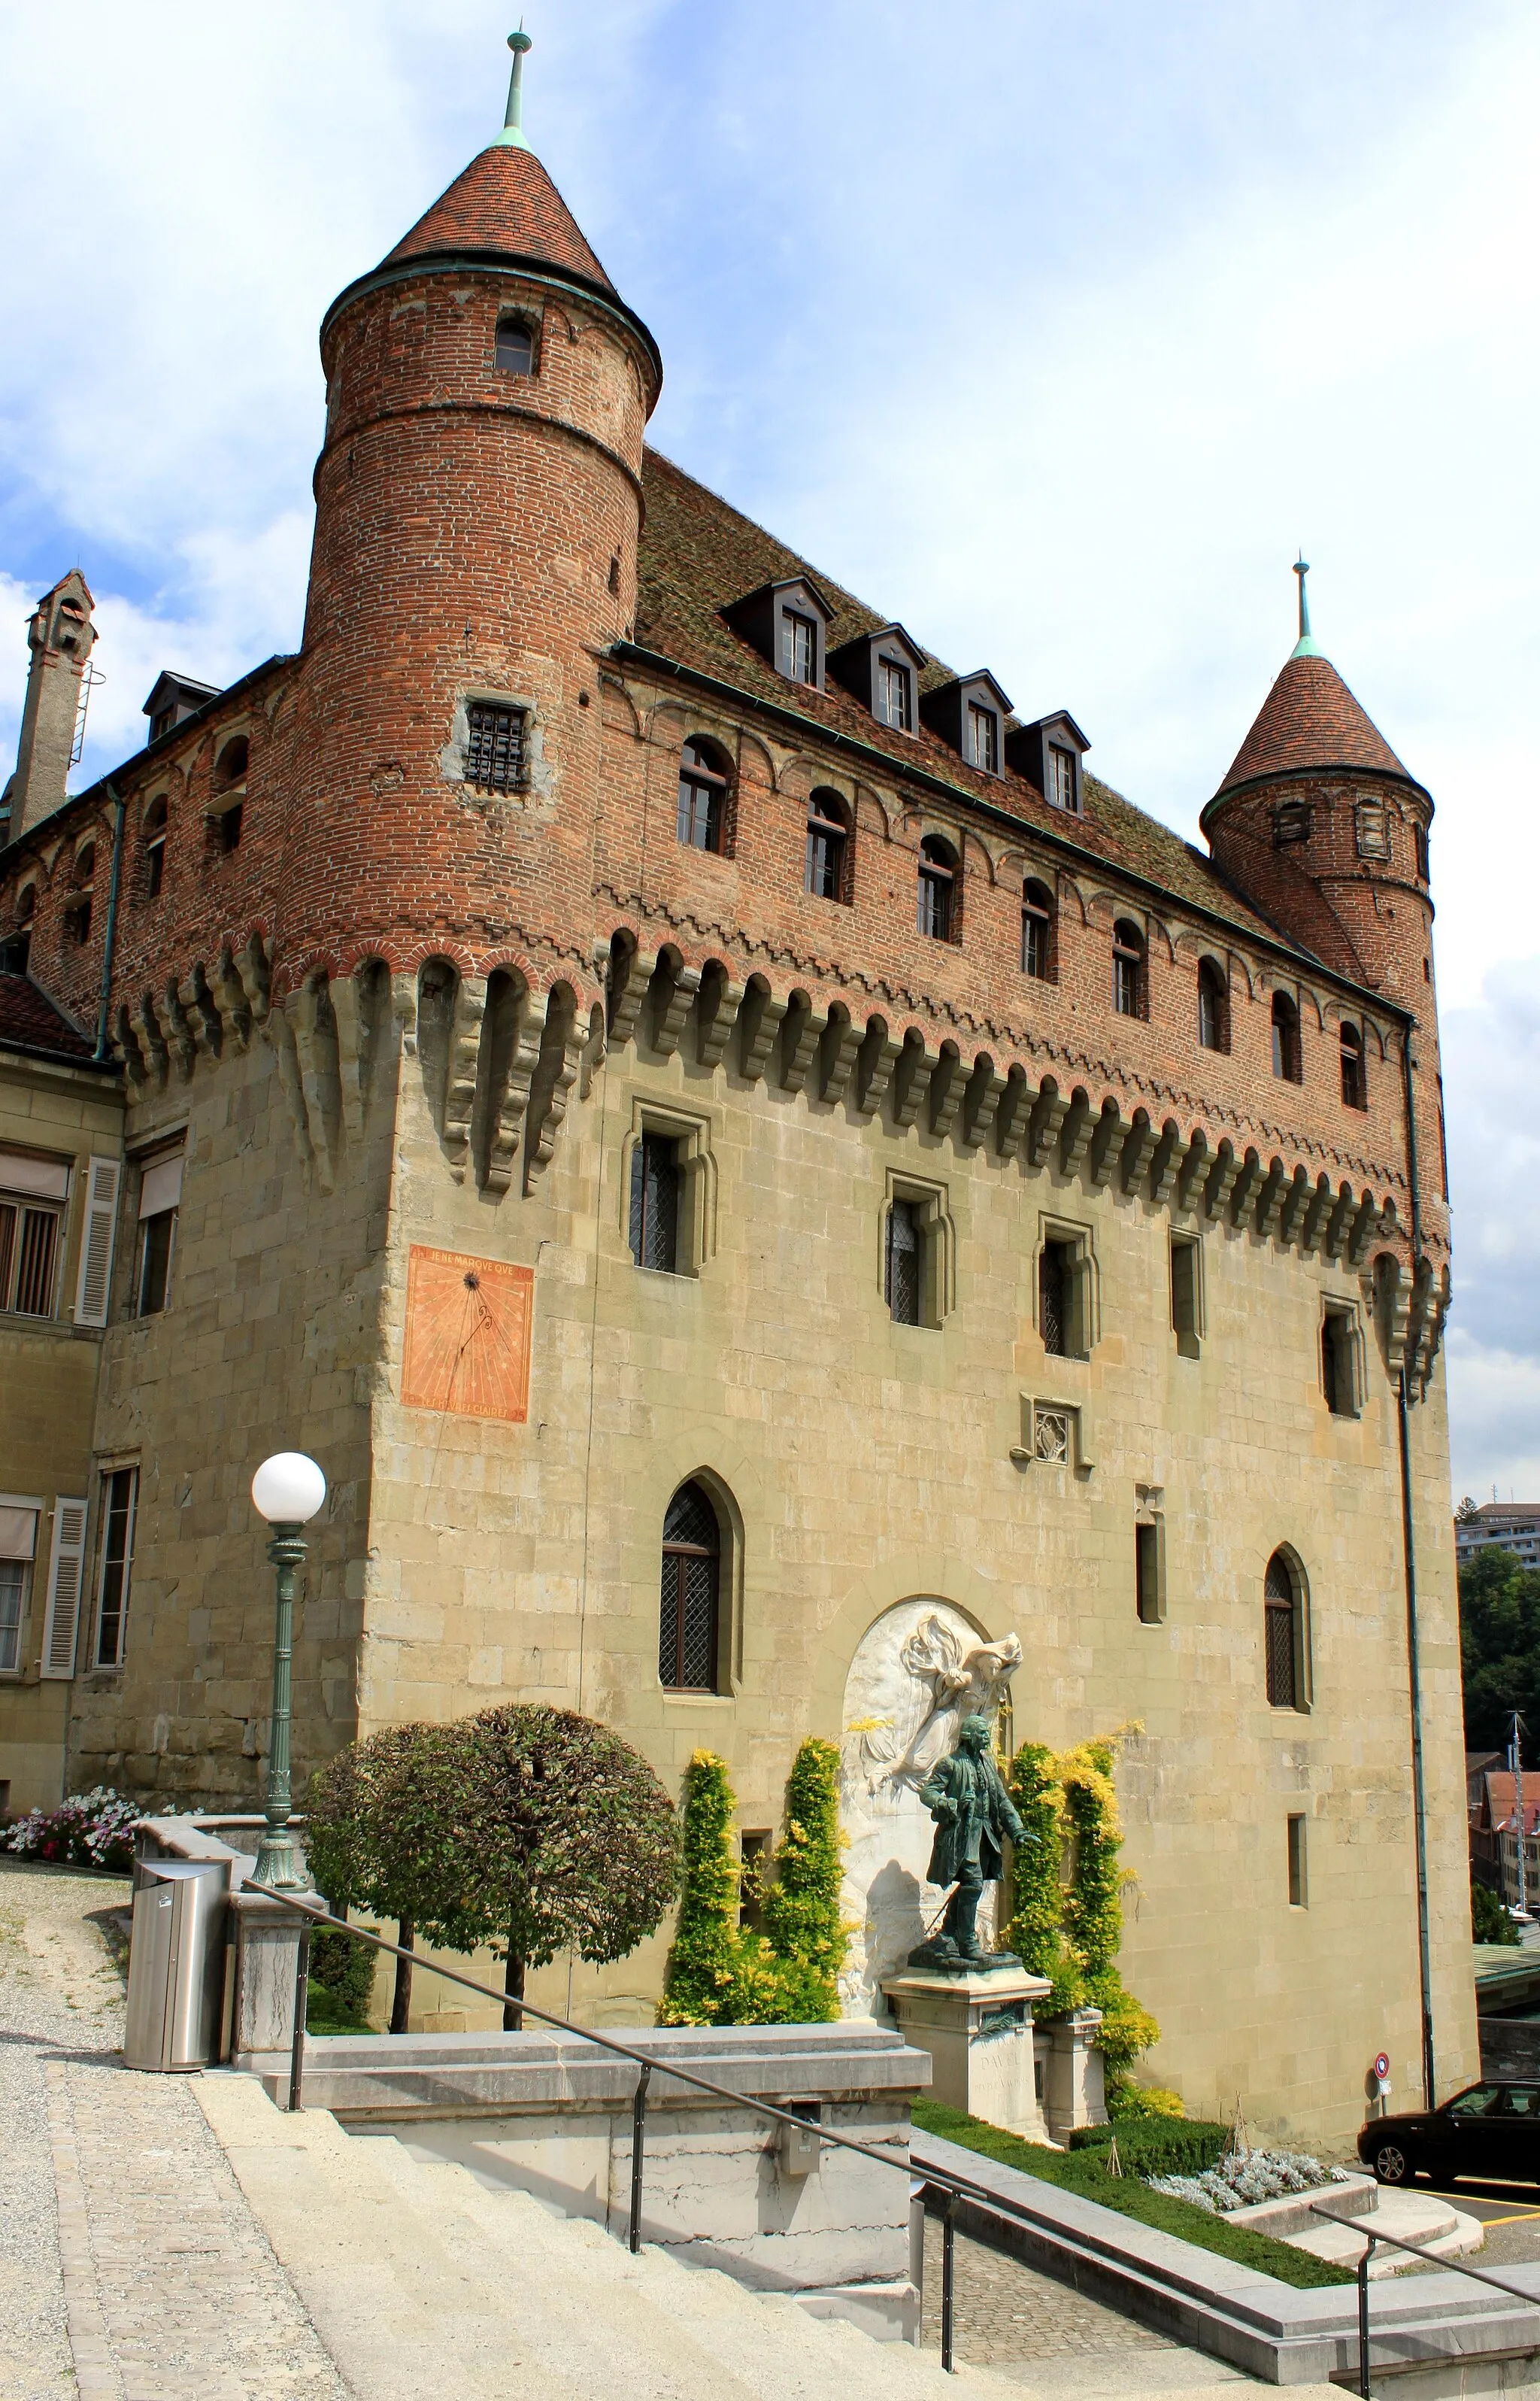 Photo showing: Suisse, canton de Vaud, Lausanne, Château Saint-Maire. Construit dès 1396 pour devenir la résidence des Evêques. Aujourd'hui, siège du gouvernement. Ne se visite pas. Classé depuis 1920.